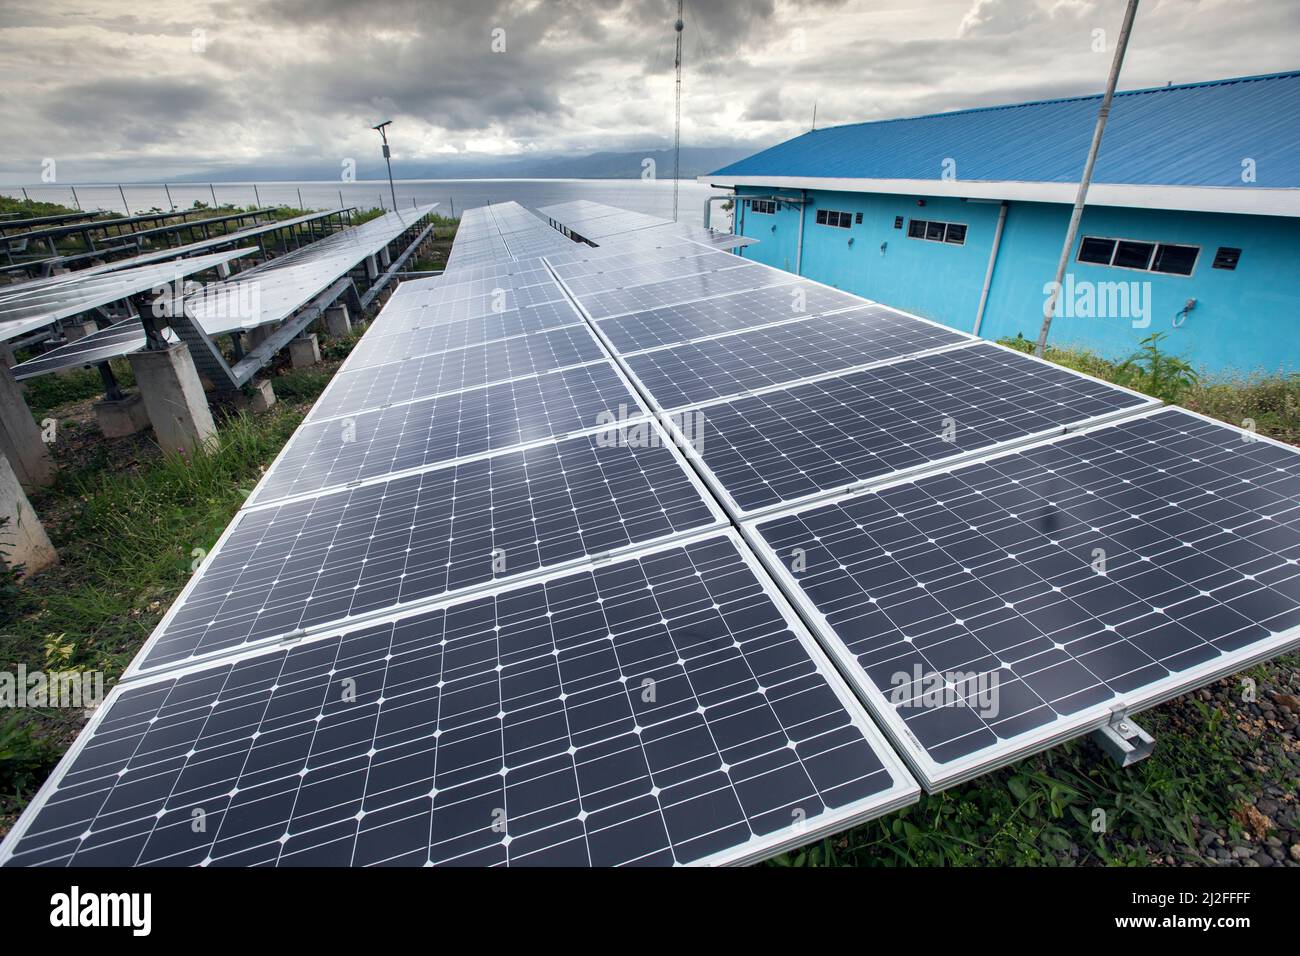 MCC ha llevado electricidad estable con energía solar a los residentes de la isla de Karampuang, Indonesia, bajo el proyecto de prosperidad verde de la Indone Foto de stock